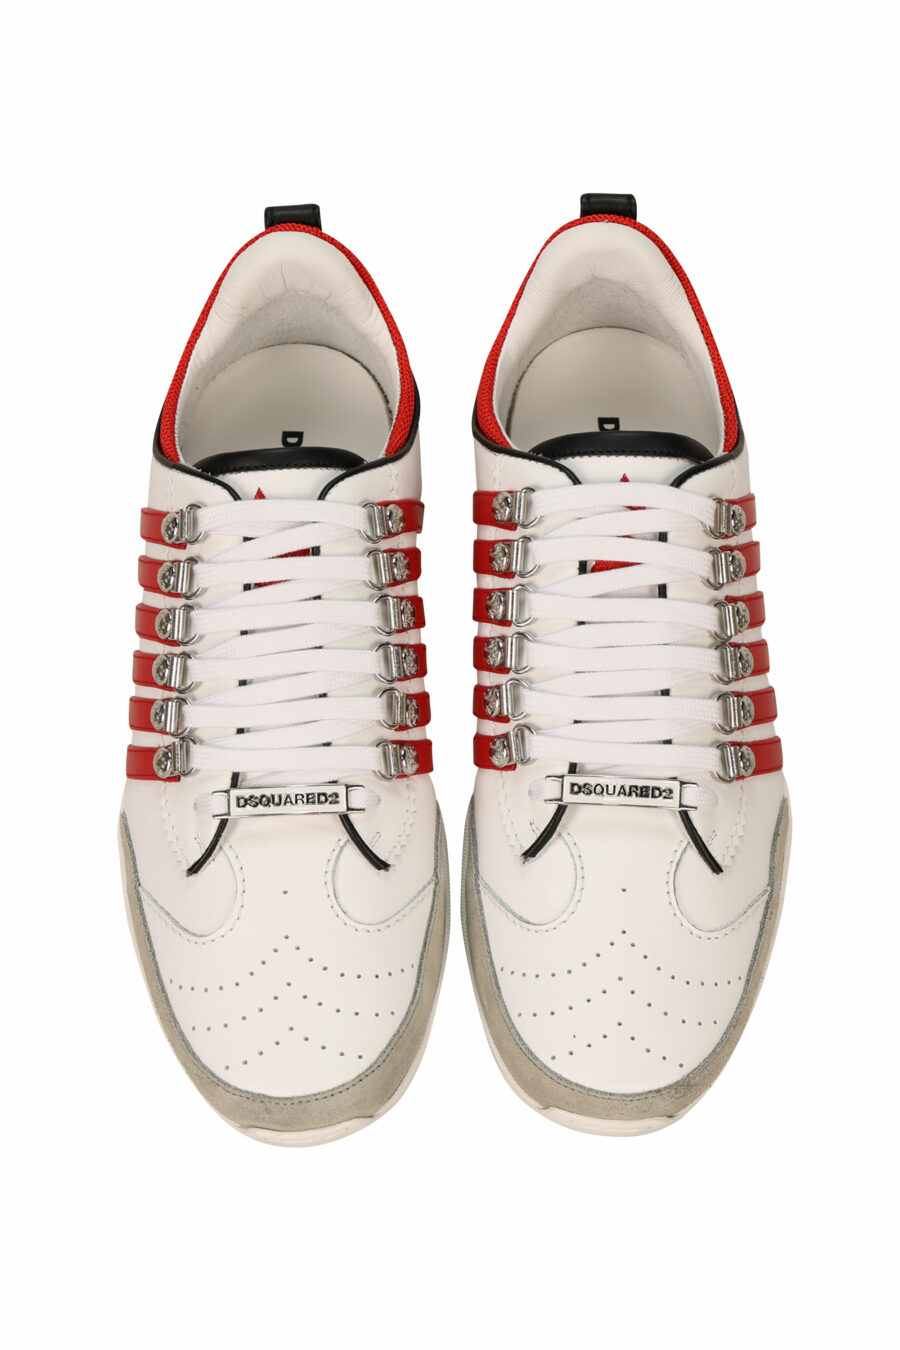 Zapatillas blancas con lineas rojas y suela blanca - 8055777300985 4